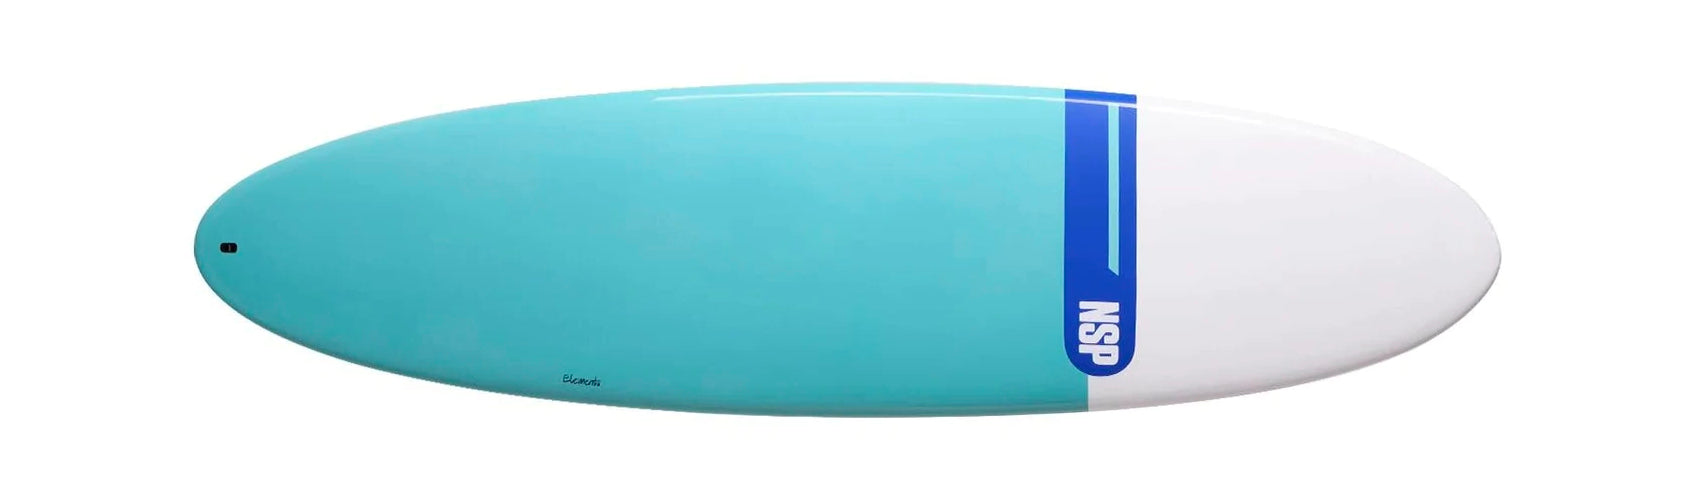 User Friendly Surfboards - Longboard / Mal or Mini-Mal shape